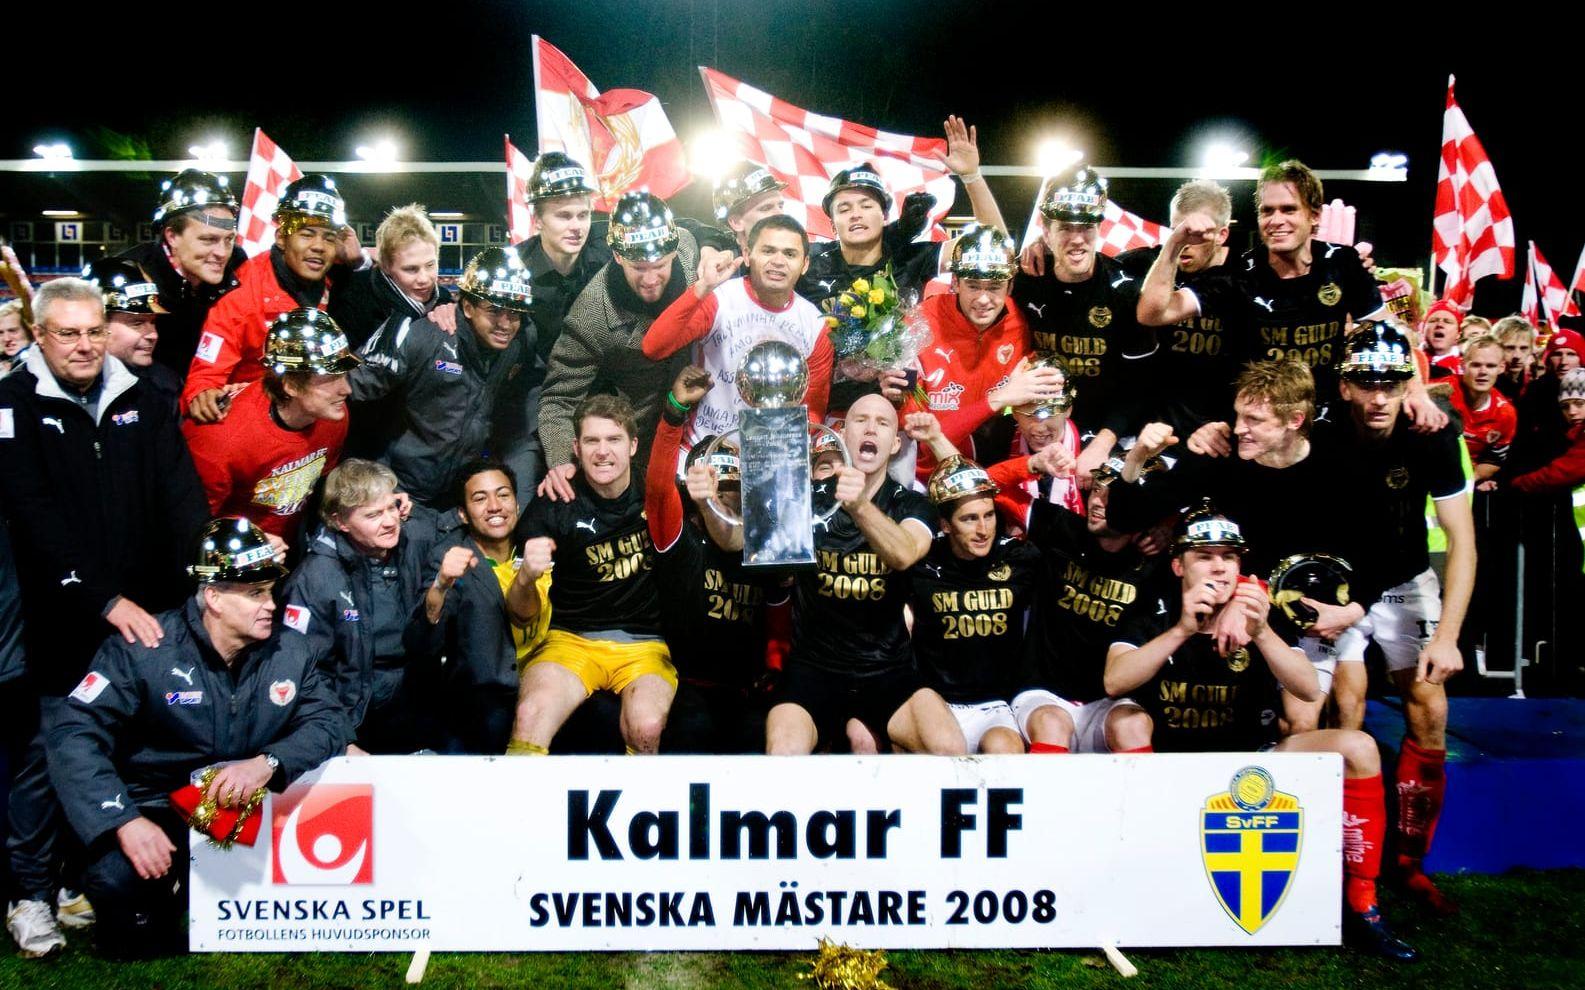 2008: Kalmar FF 13 poäng. Började allsvenskan, som inför 2008 års säsong hade skiftat till en 16-lagsserie, fullständigt strålande. Efter krysset mot AIK i premiären tog smålänningarna sex raka segrar innan första förlusten kom mot Elfsborg i omgång 8.